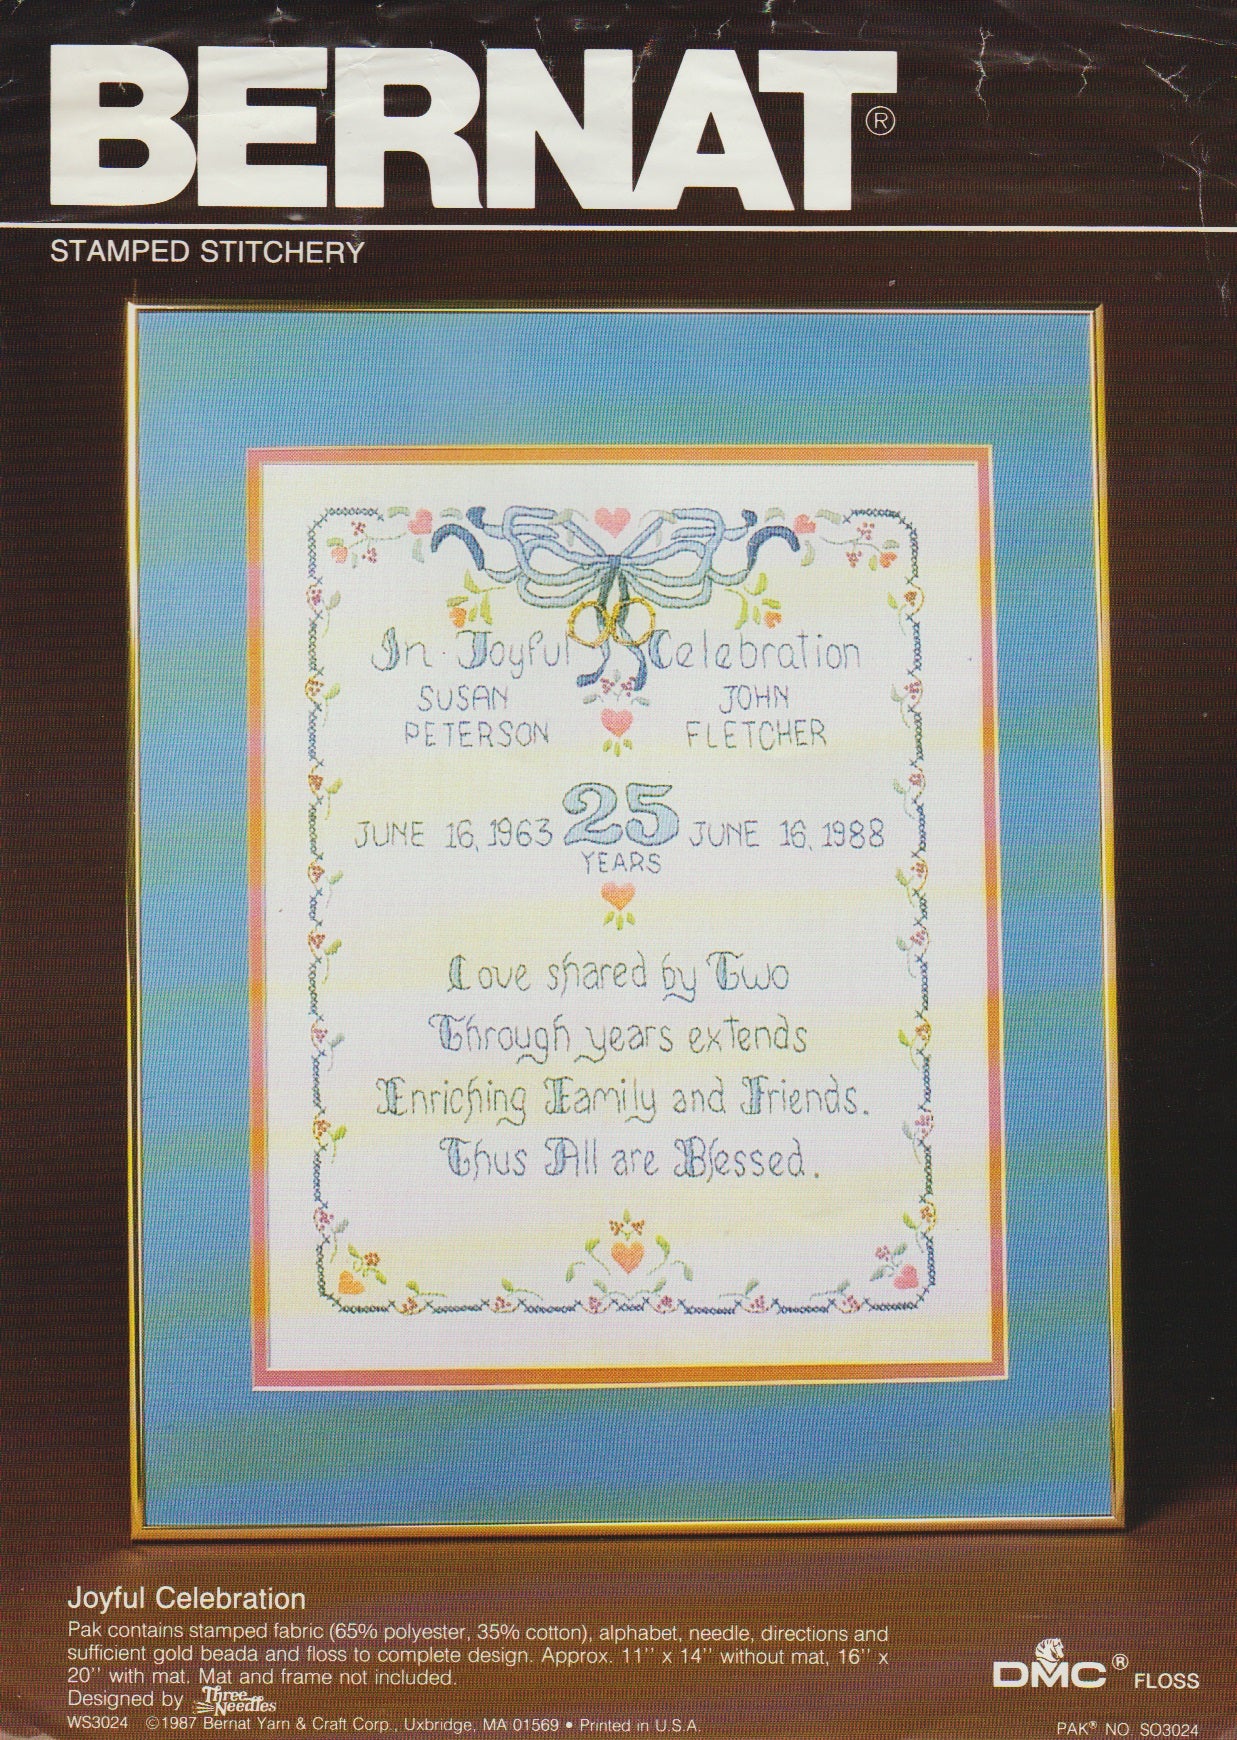 Bernat Joyful Celebration WS3024 stamped embroidery kit